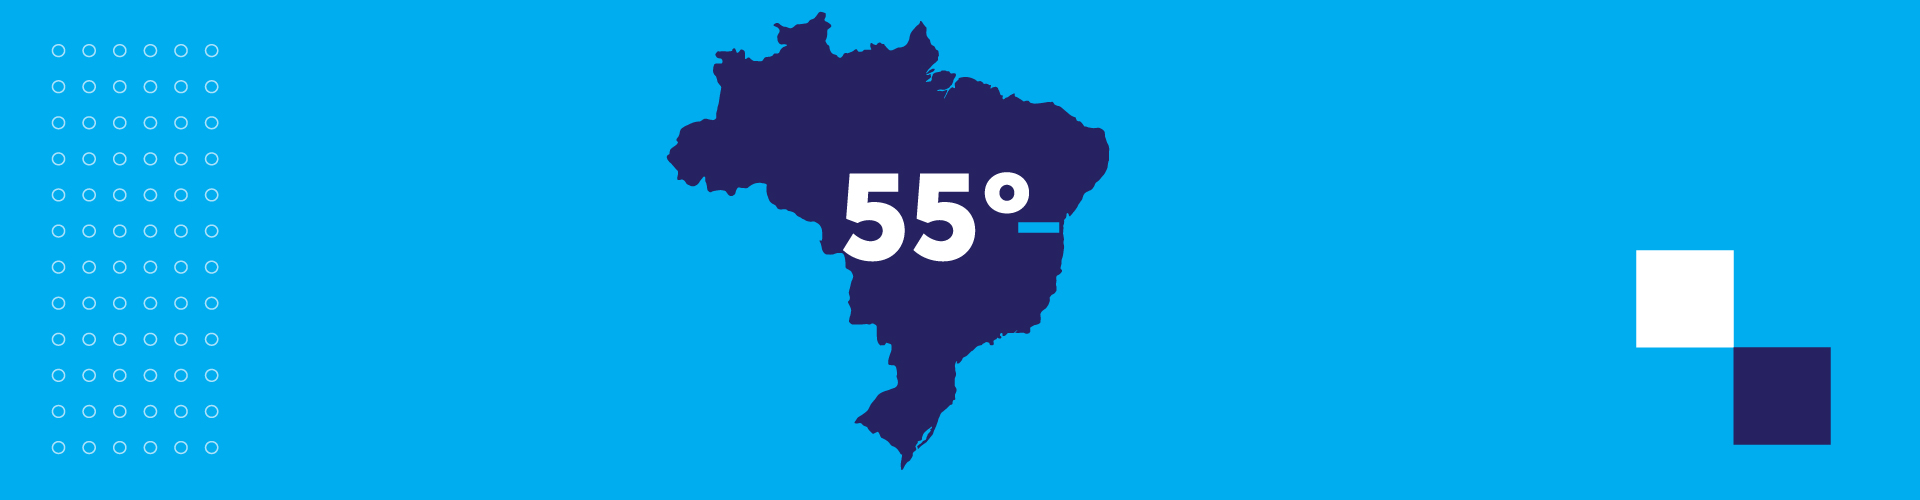 Brasil é o 55º em liberdade de energia elétrica